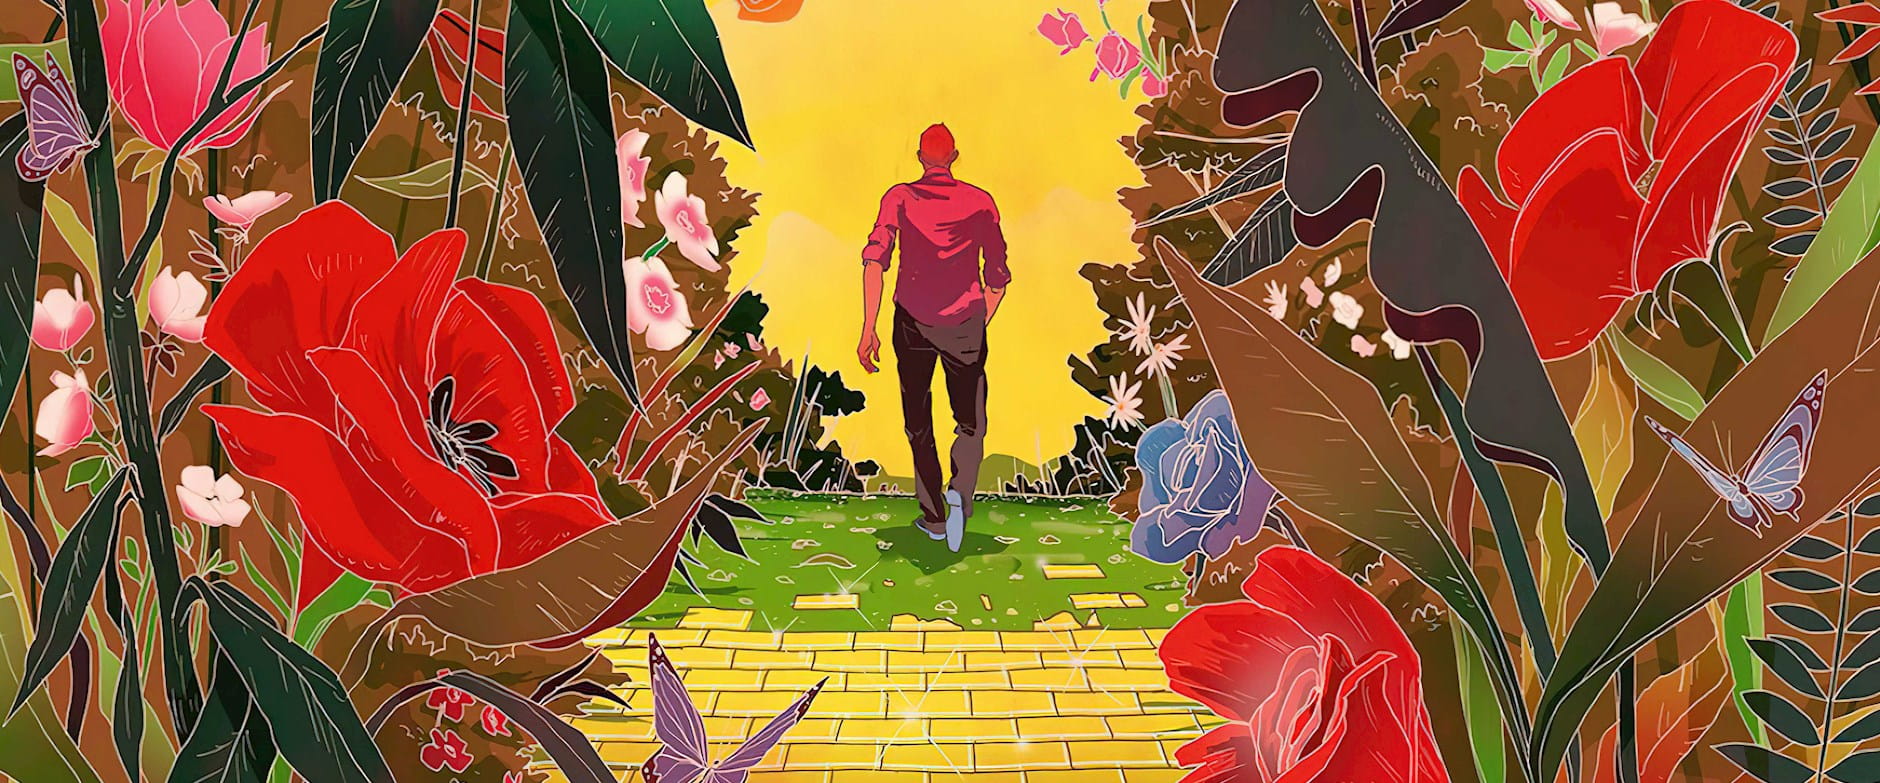 Illustration of man on golden path walking toward horizon